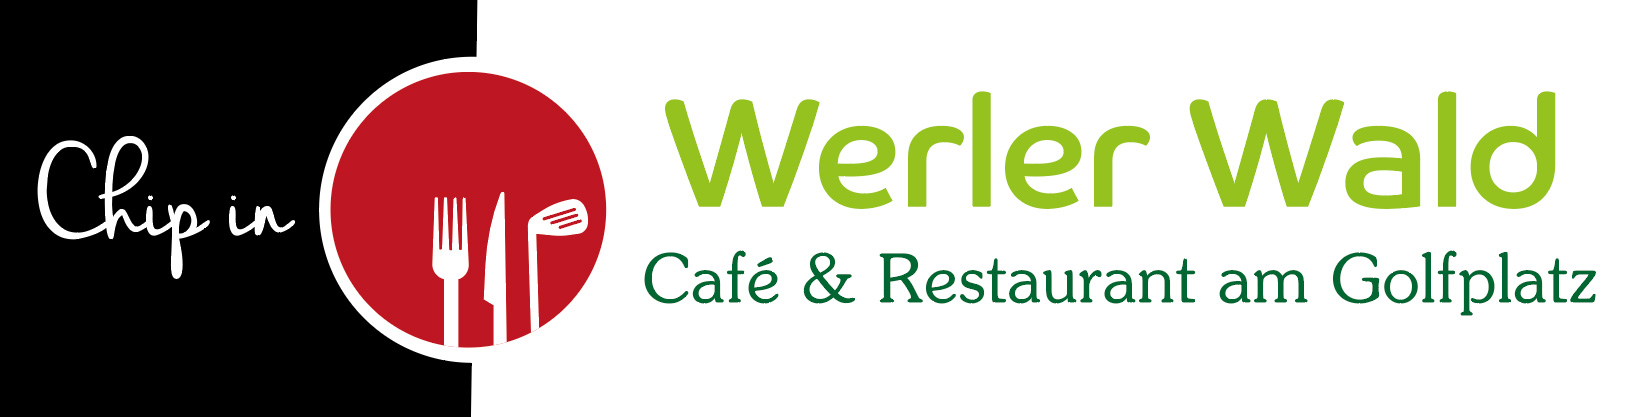 Werler Wald - Café & Restaurant am Golfplatz